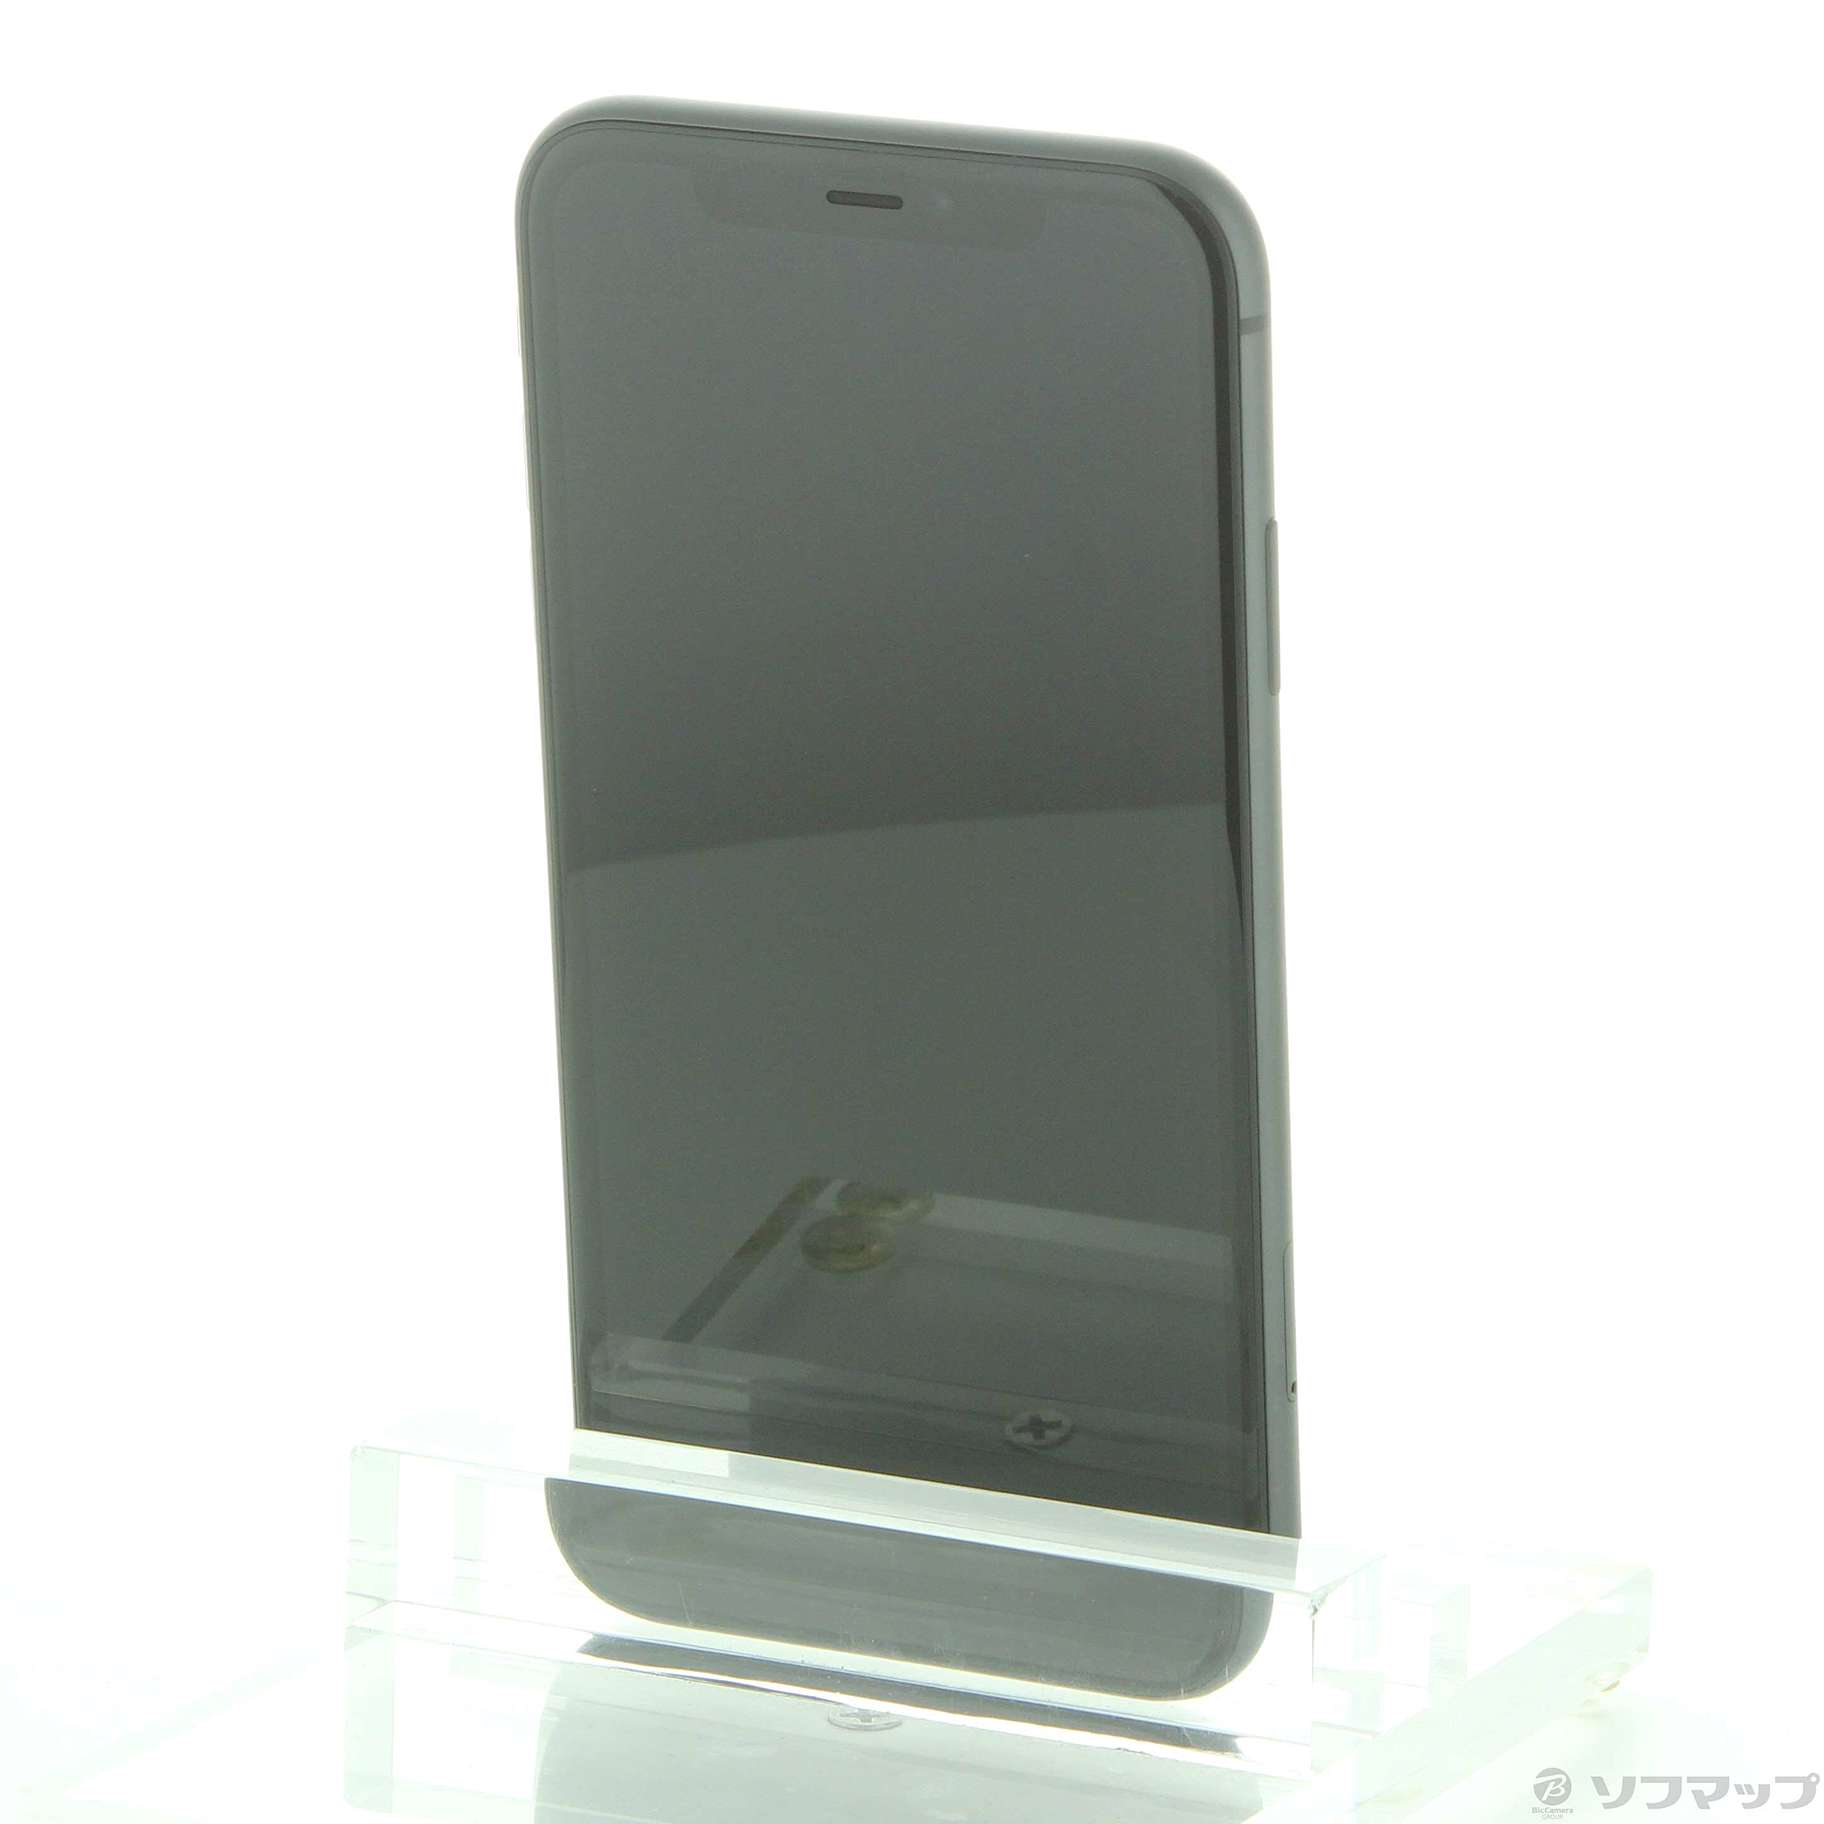 【史博物館】SoftBank MWLT2J/A iPhone 11 64GB ブラック SB iPhone